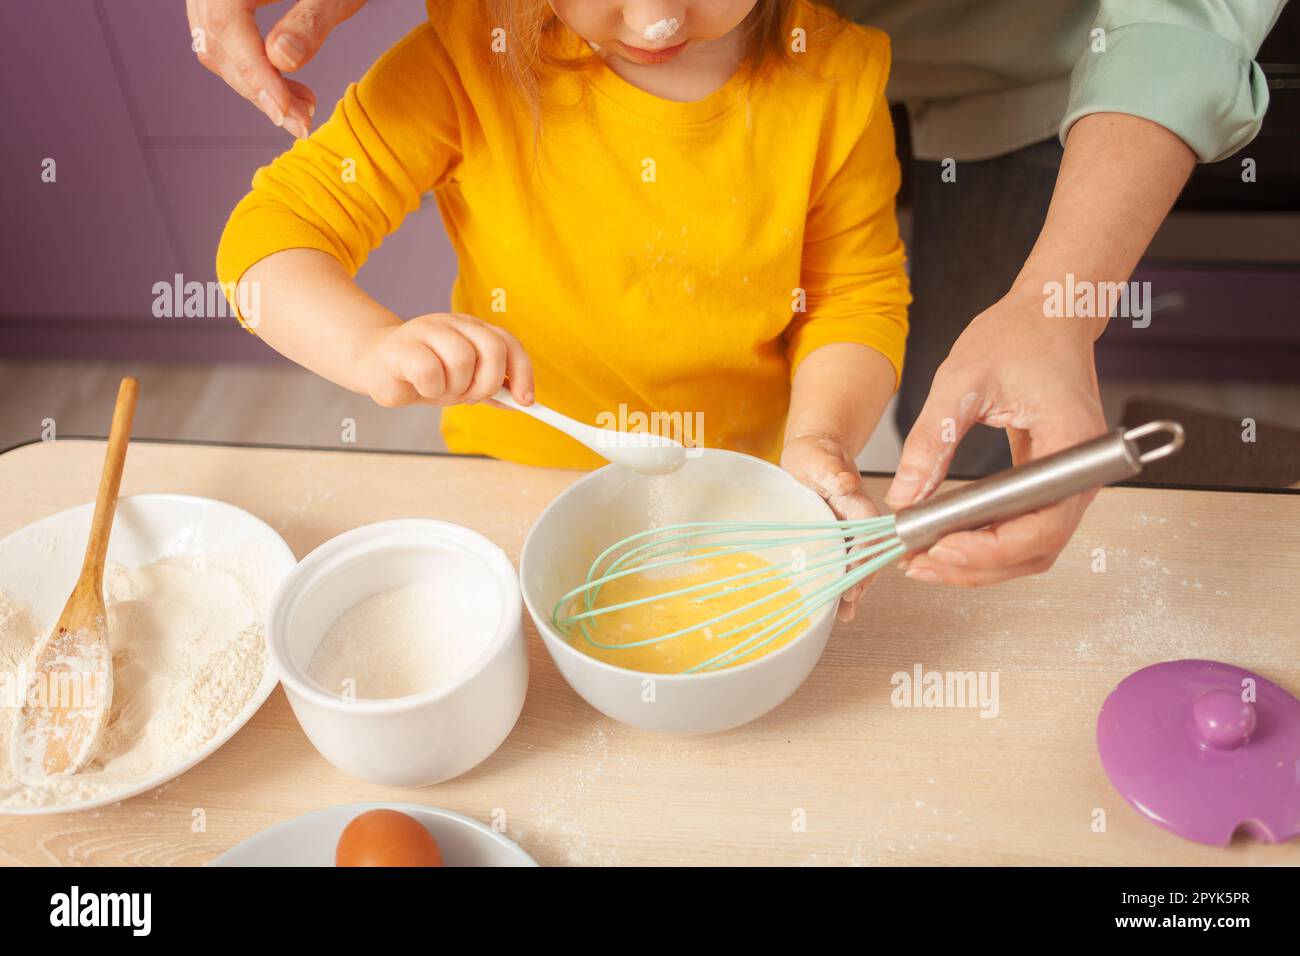 Nonna e nipote preparano l'impasto, trascorrono del tempo insieme, le relazioni di famiglia, l'amore. cucchiaio con zucchero. Foto Stock